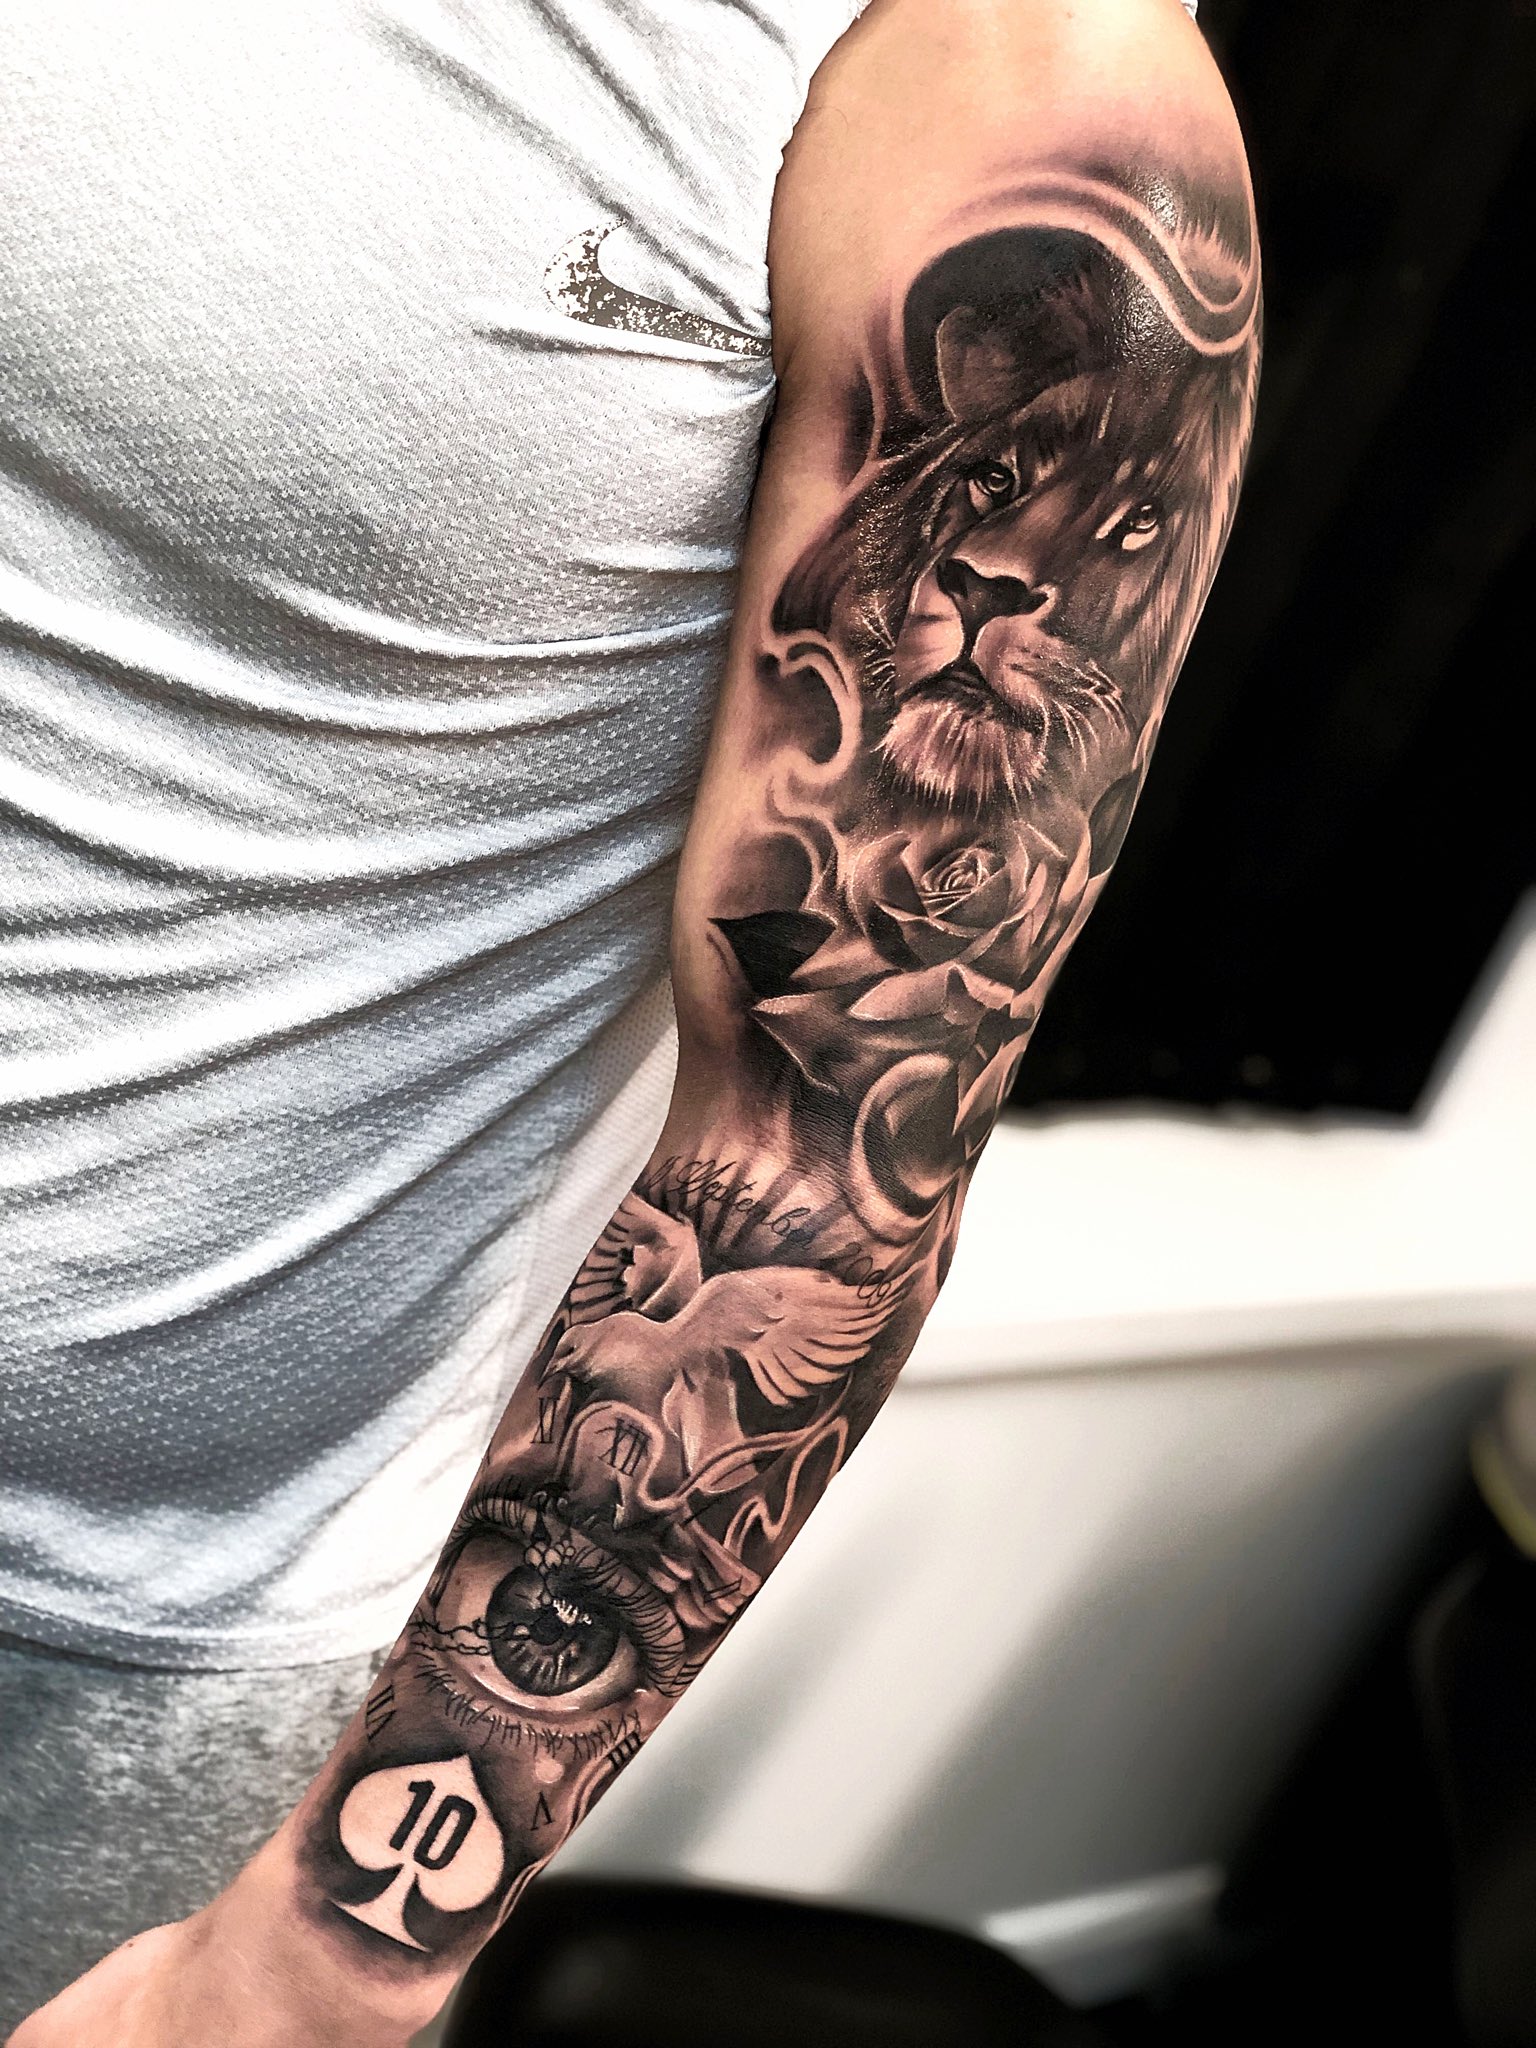 Jungle Themed Sleeve Tattoo  Tattoo Ideas and Designs  Tattoosai